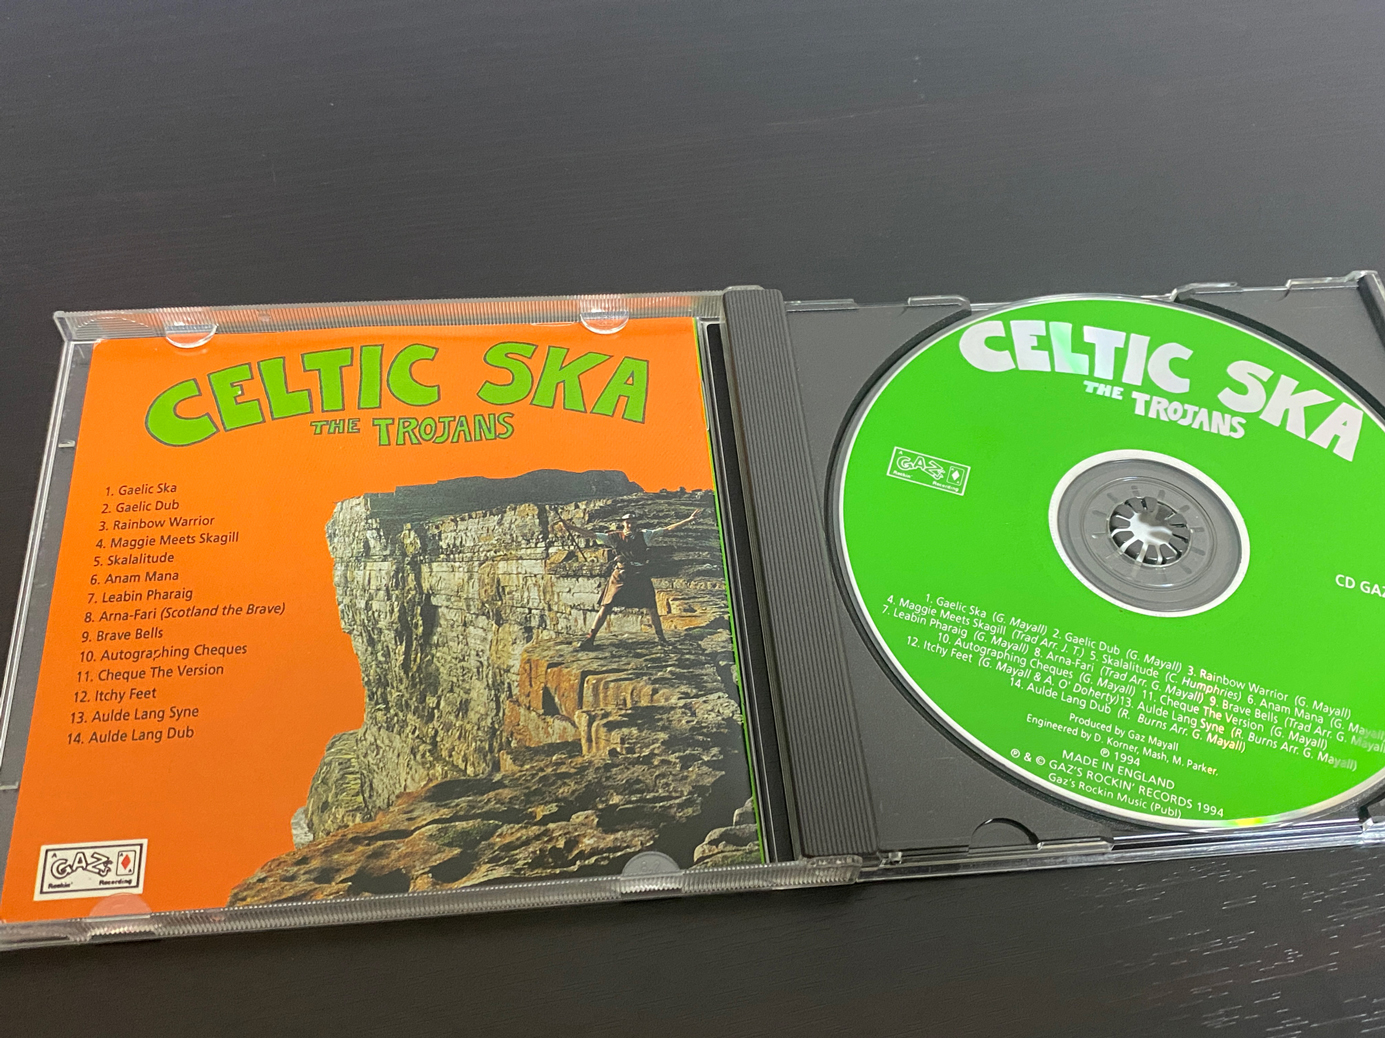 The Trojans「Celtic Ska」の収録曲